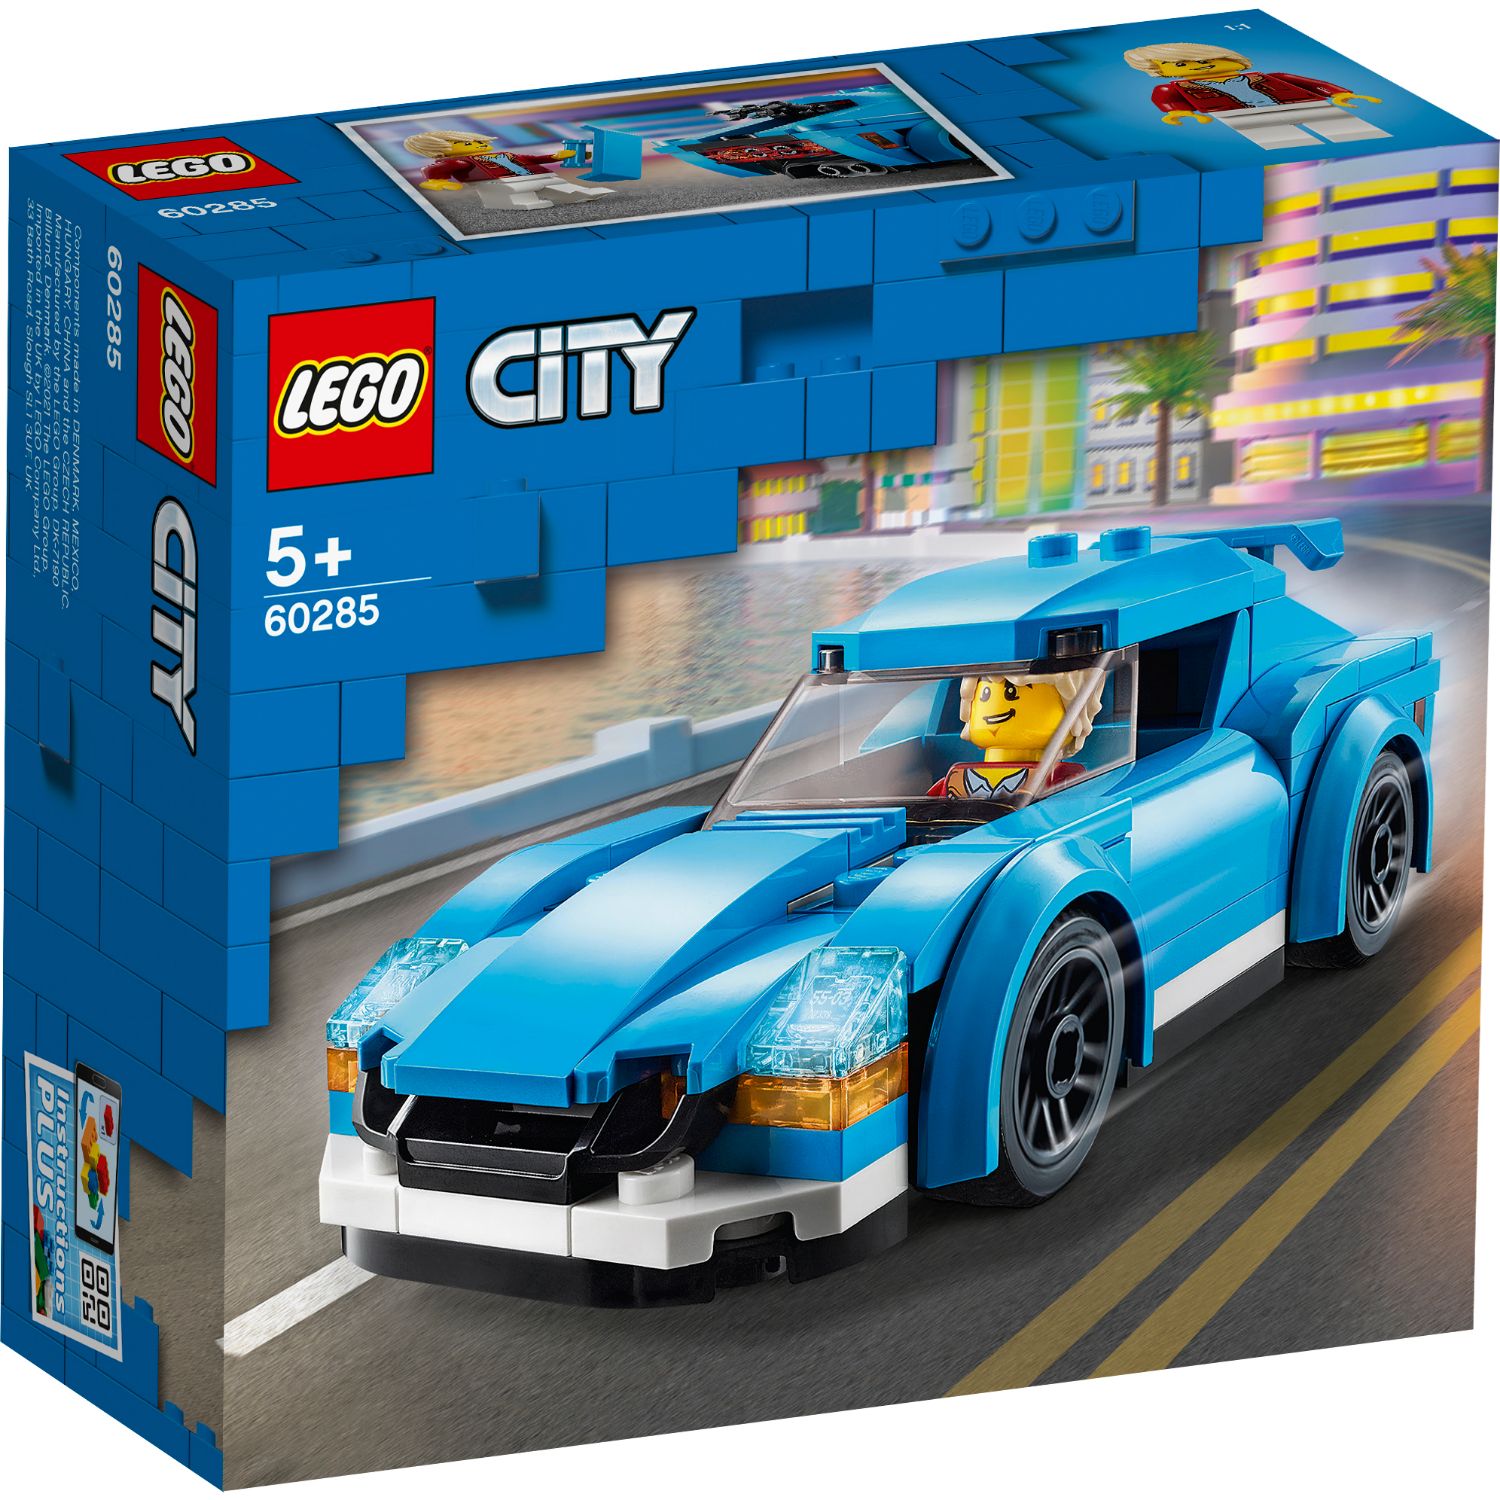 LEGO CITY 60285 SPORTS CAR